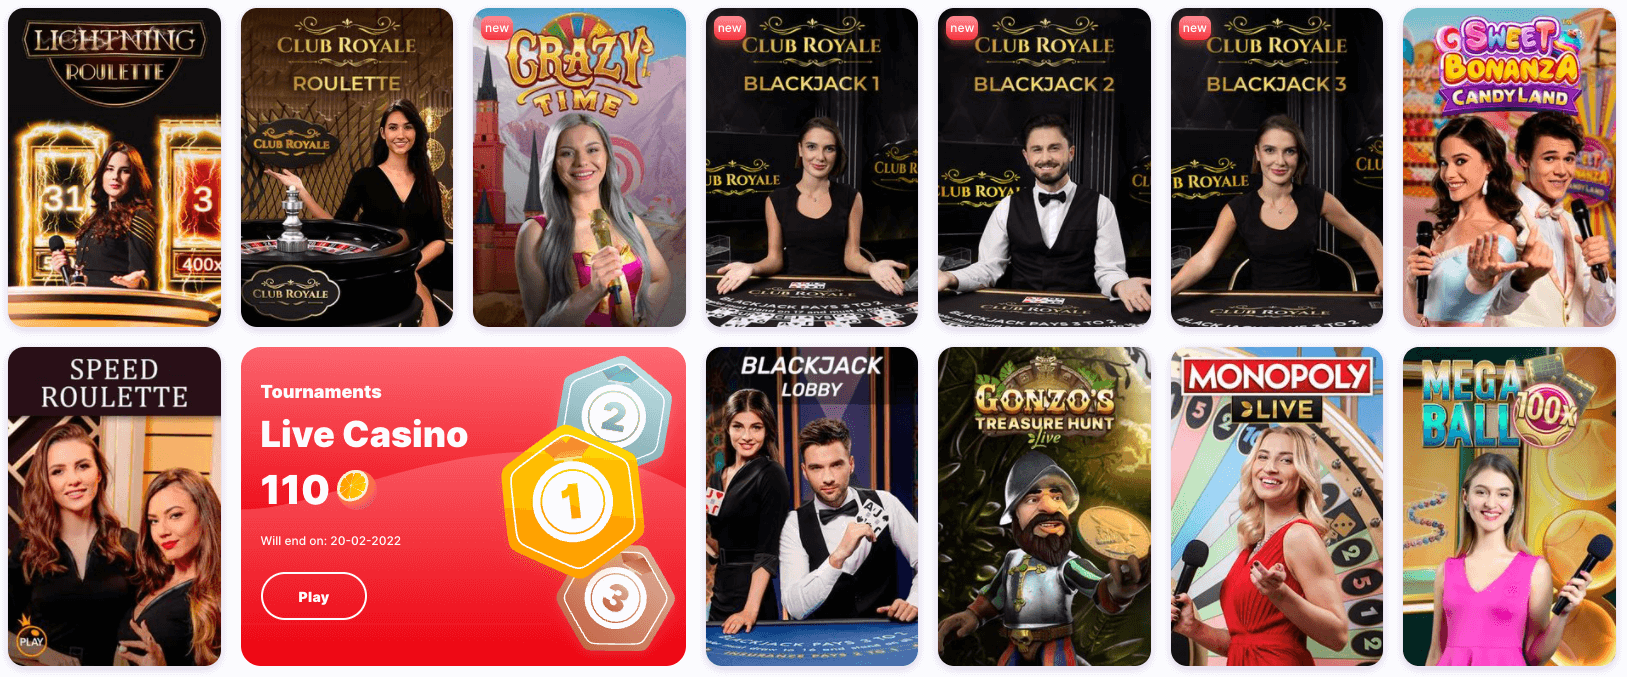 Nomini casino live casino games selection